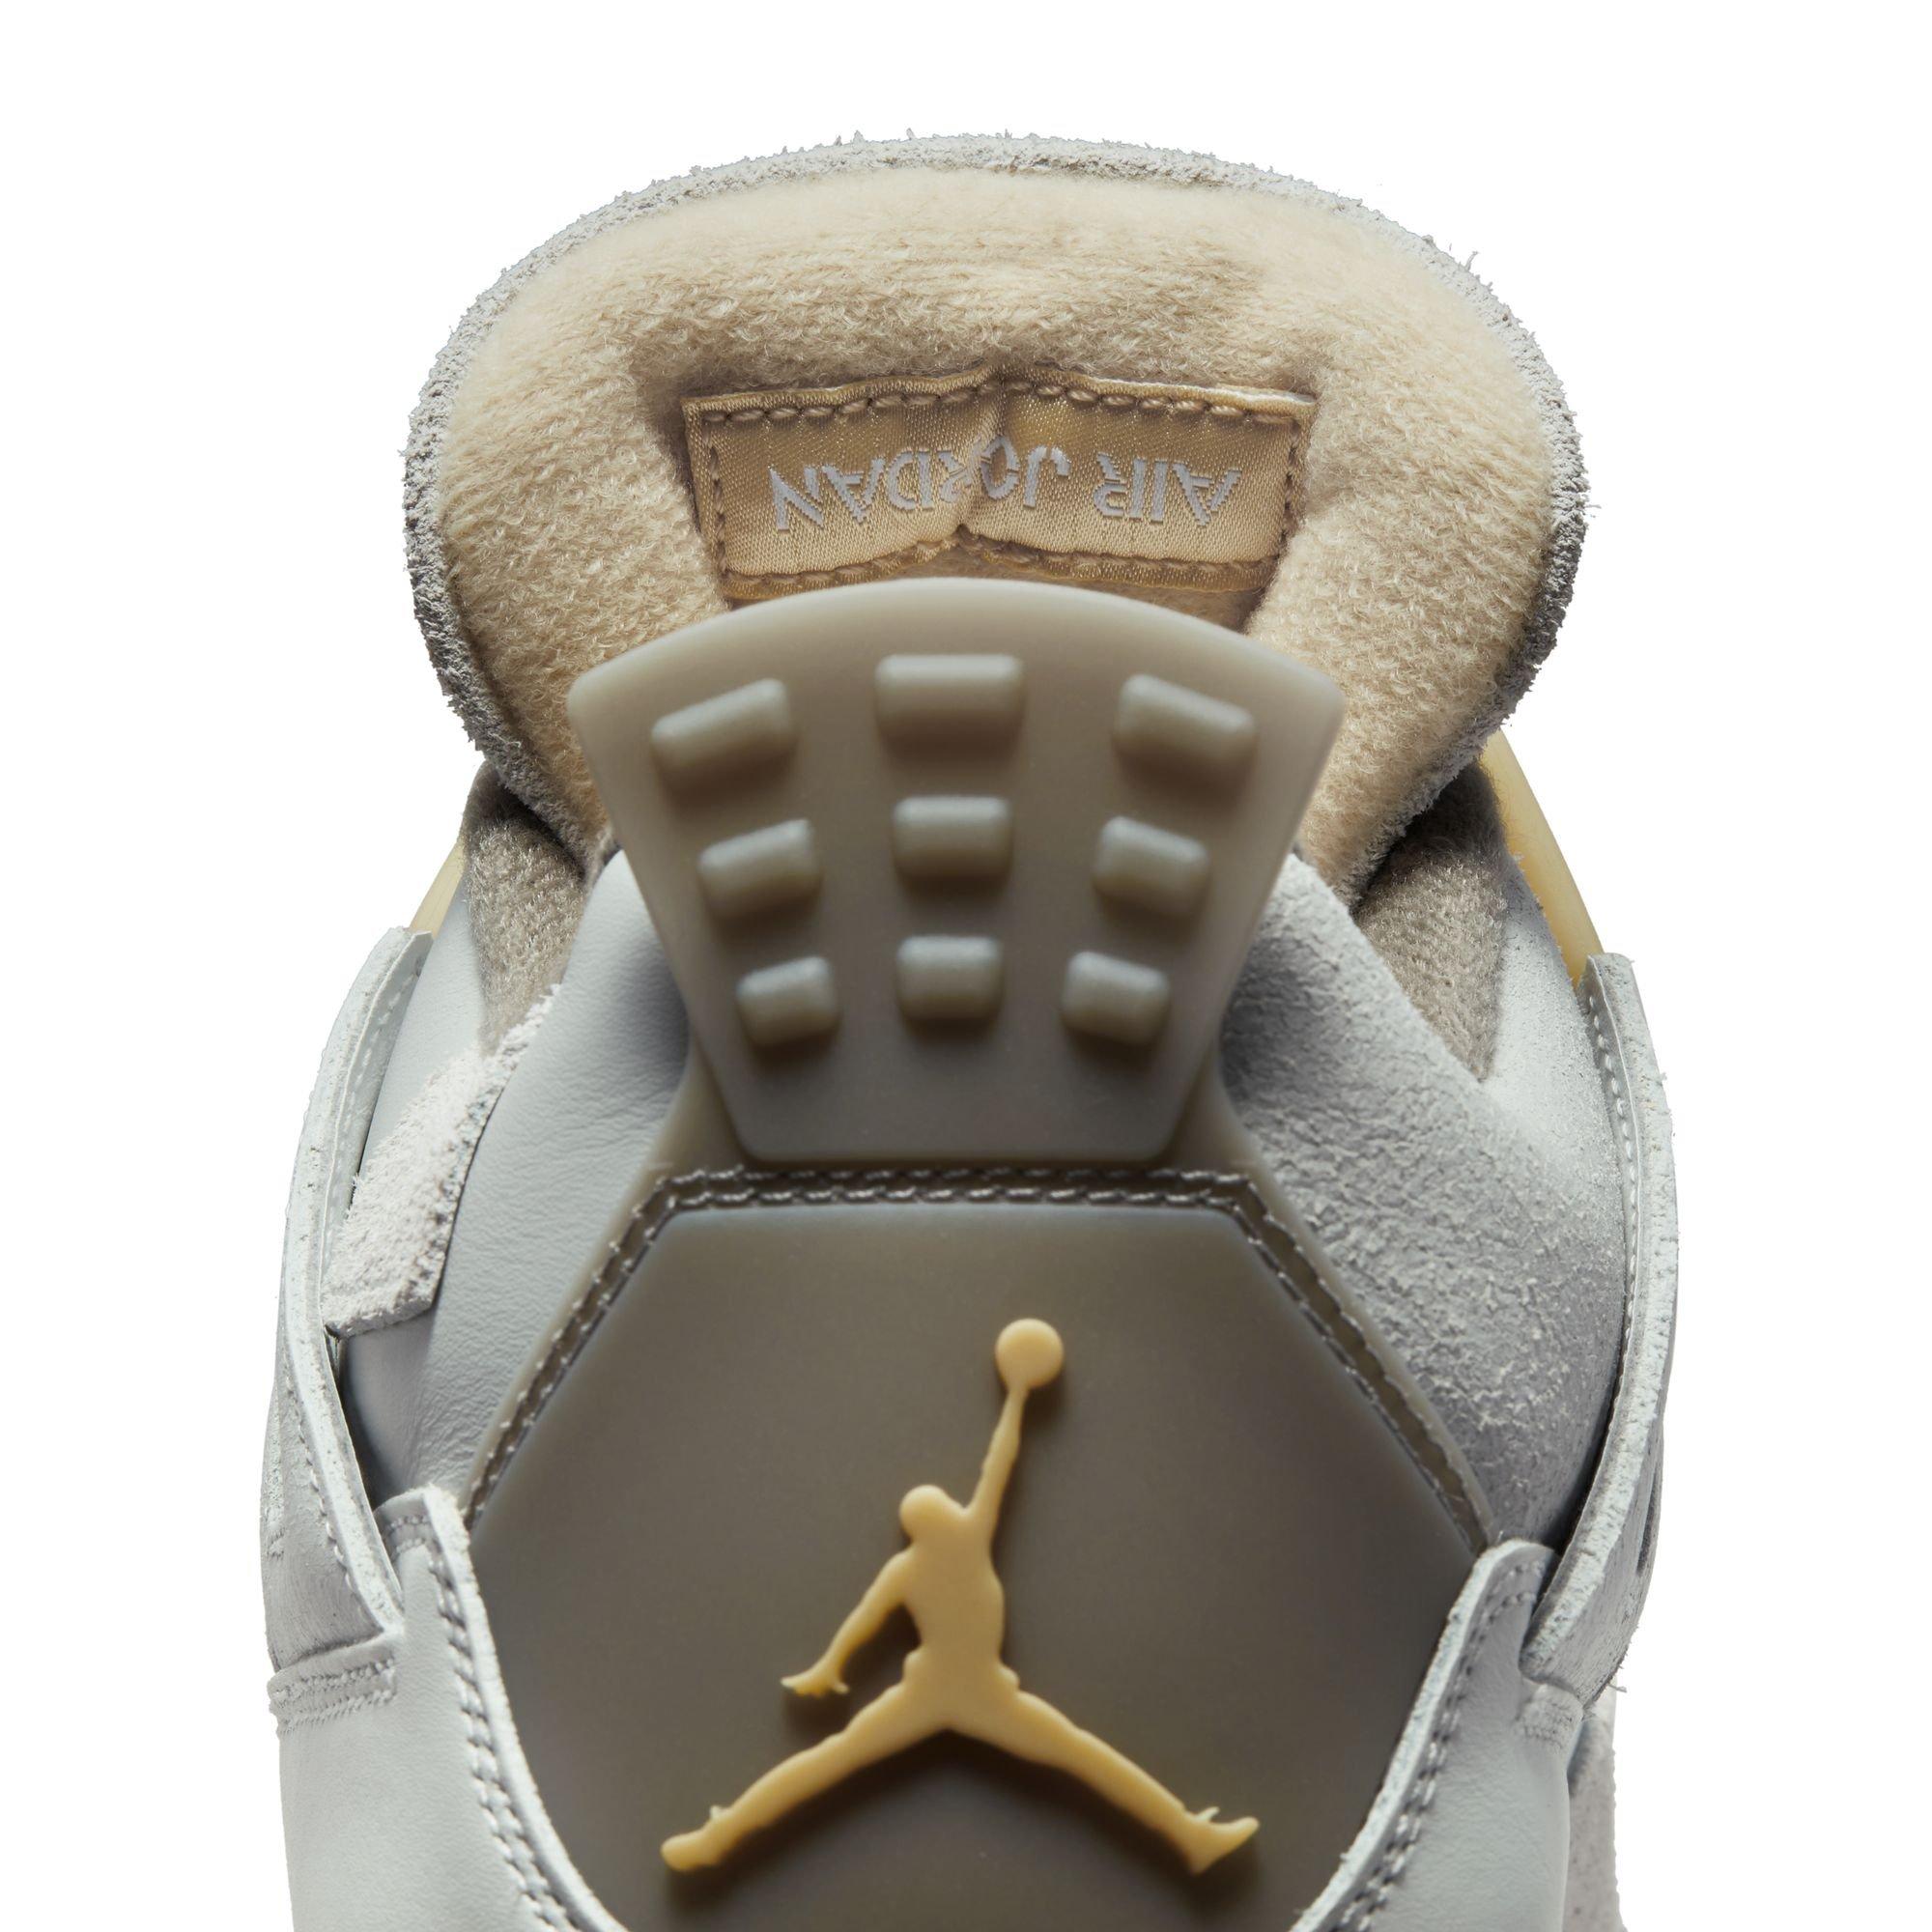 👁️ Sneaker Visionz 👁️ on X: Louis Vuitton x Air Jordan 4 Customs 🔥   / X